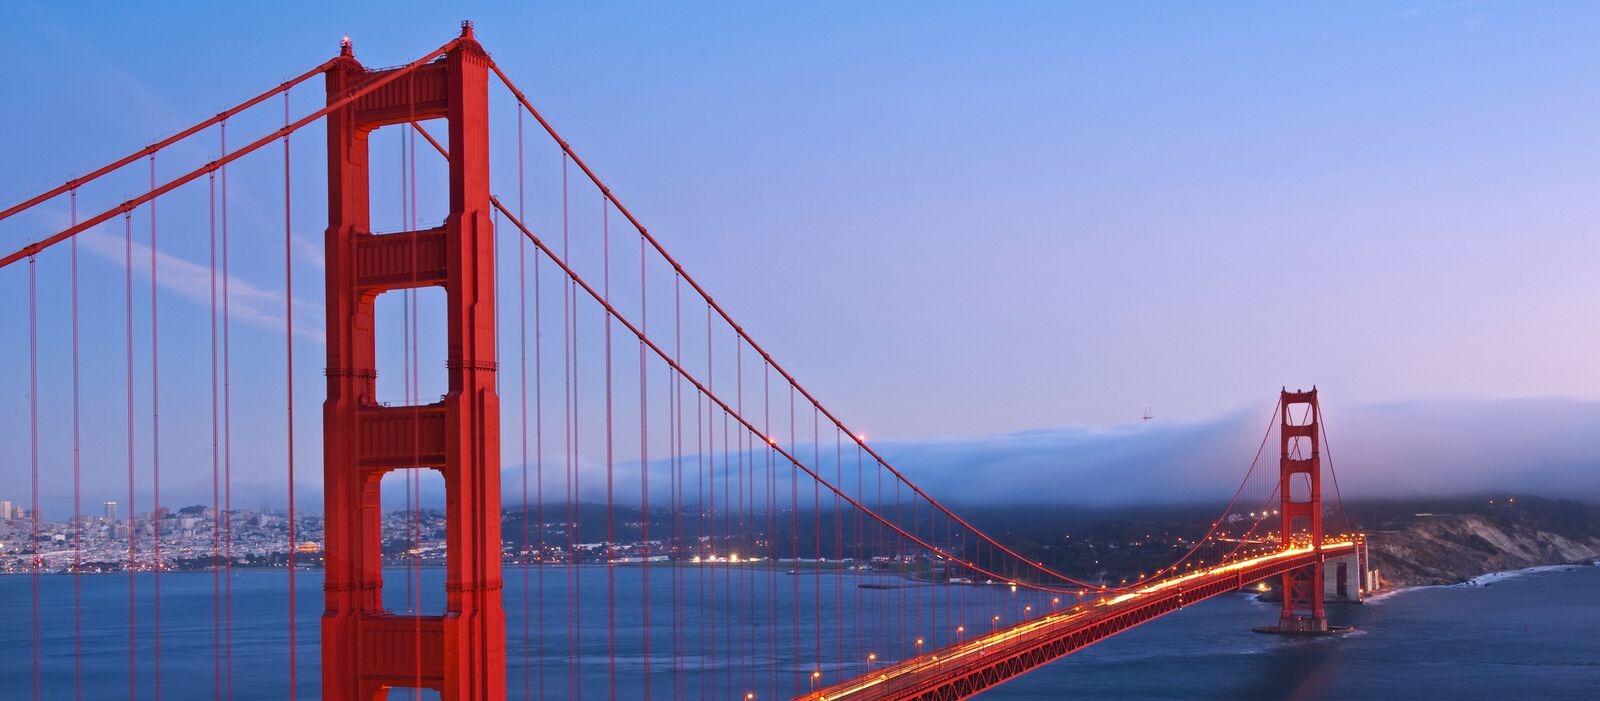 Abendstimmung an der Golden Gate Bridge